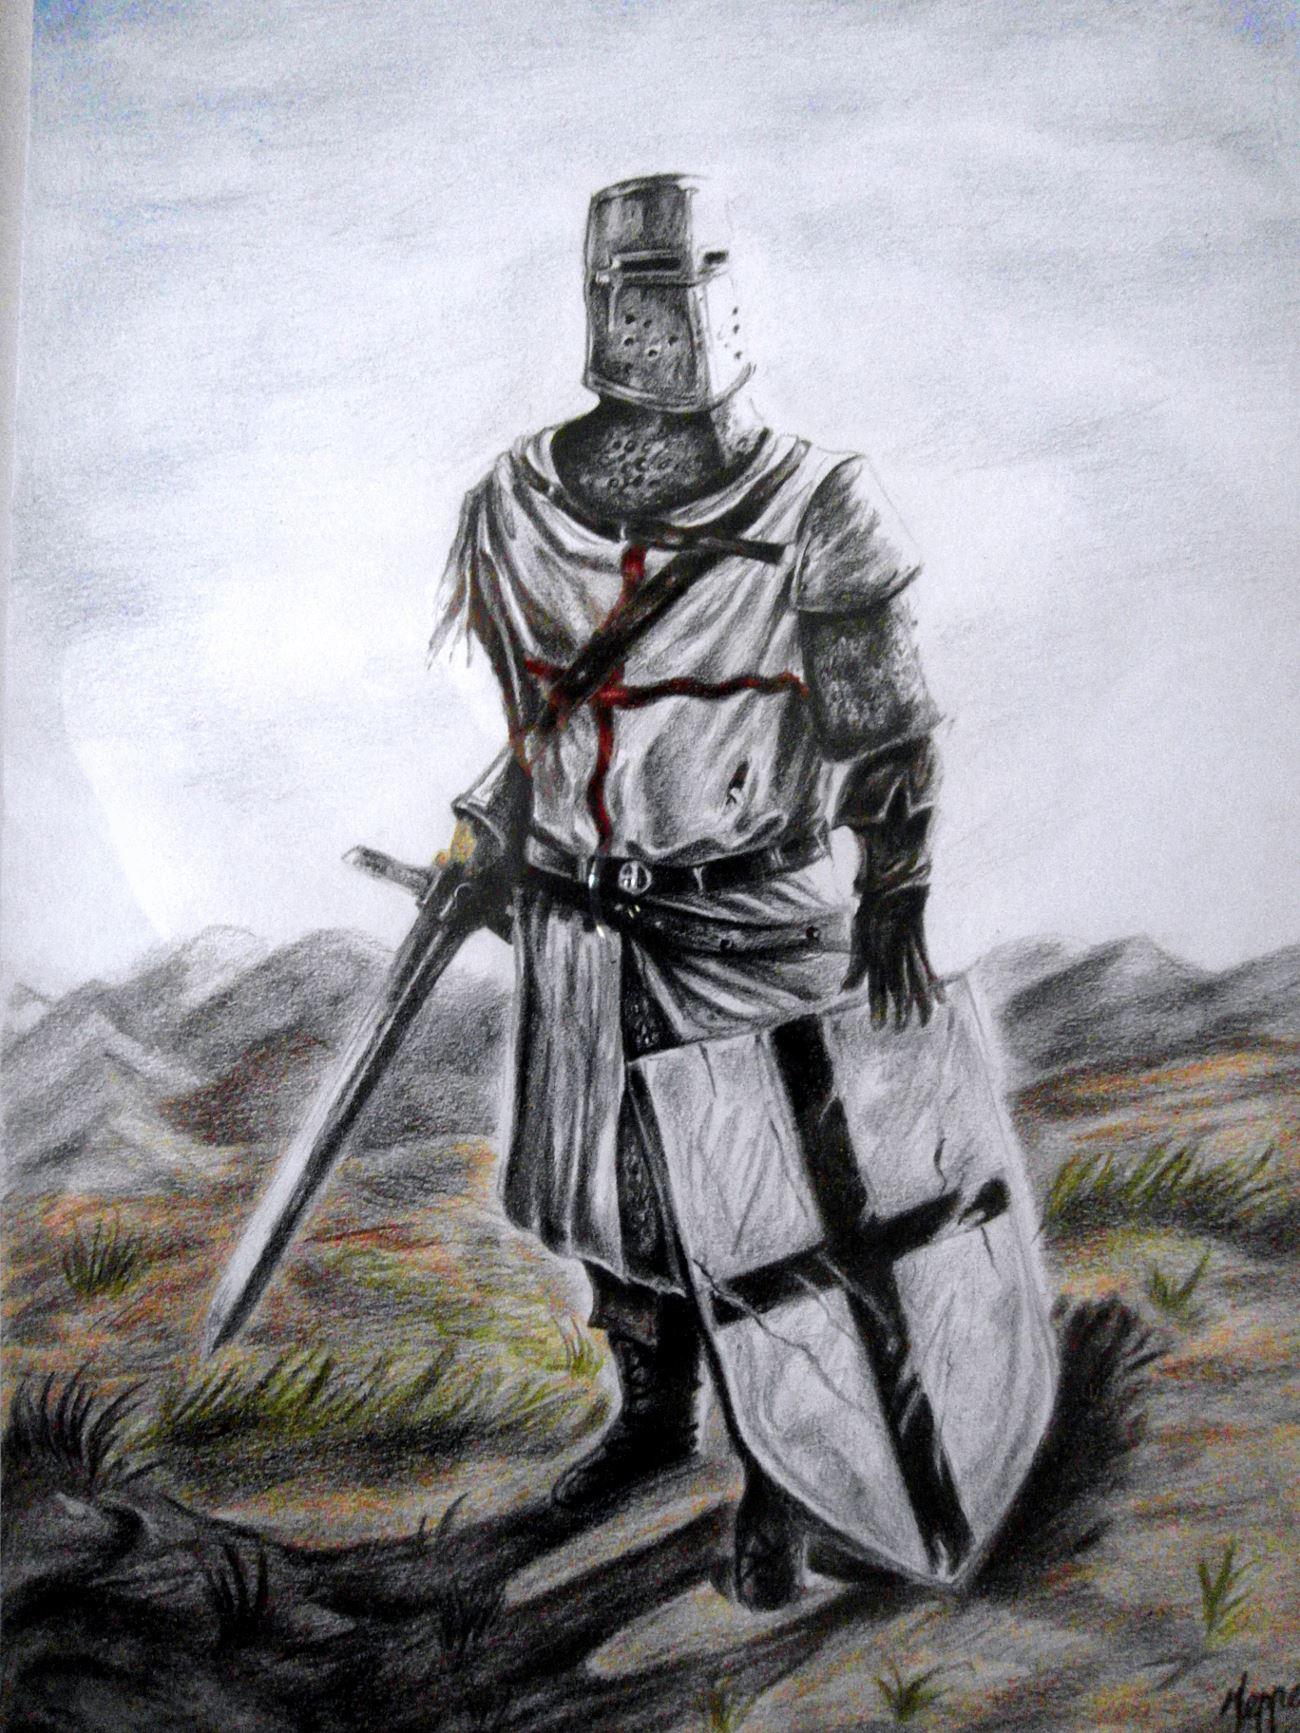 Templar Knight by Tyra-1994 on DeviantArt